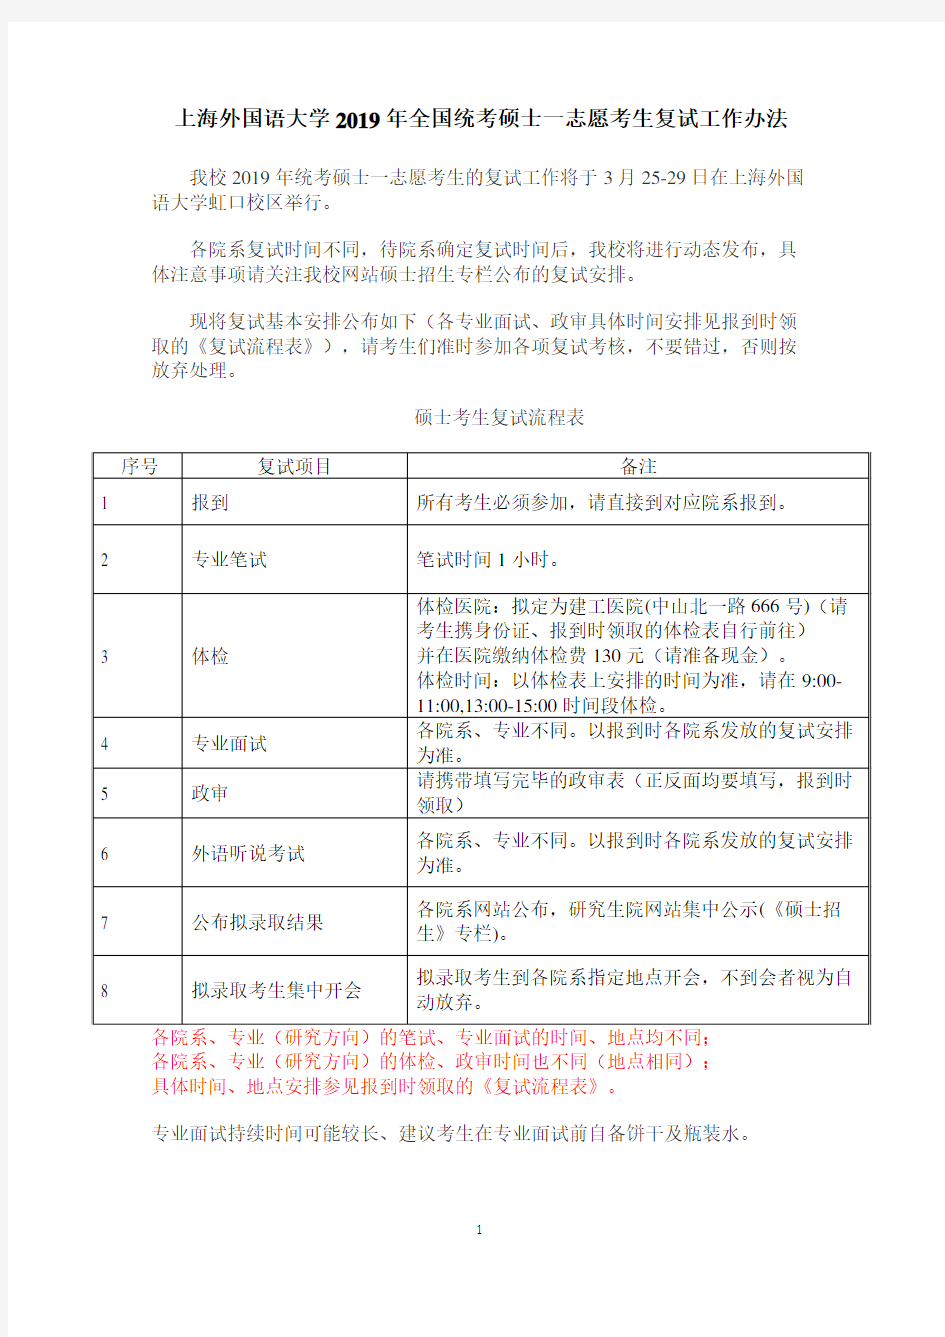 上海市住房和城乡建设管理委员会关于建设工程报建取消后有